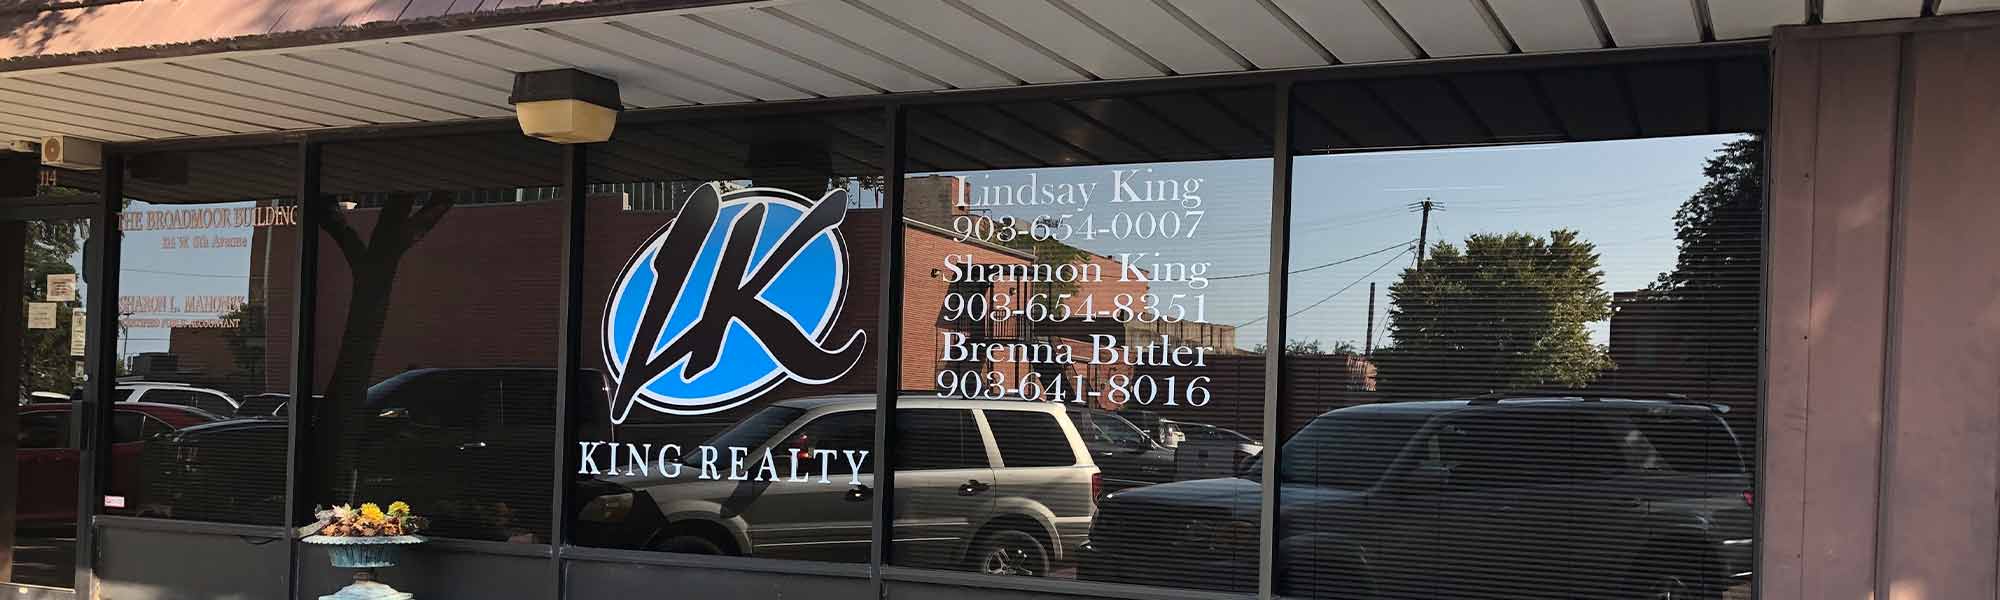 King Realty Company exterior